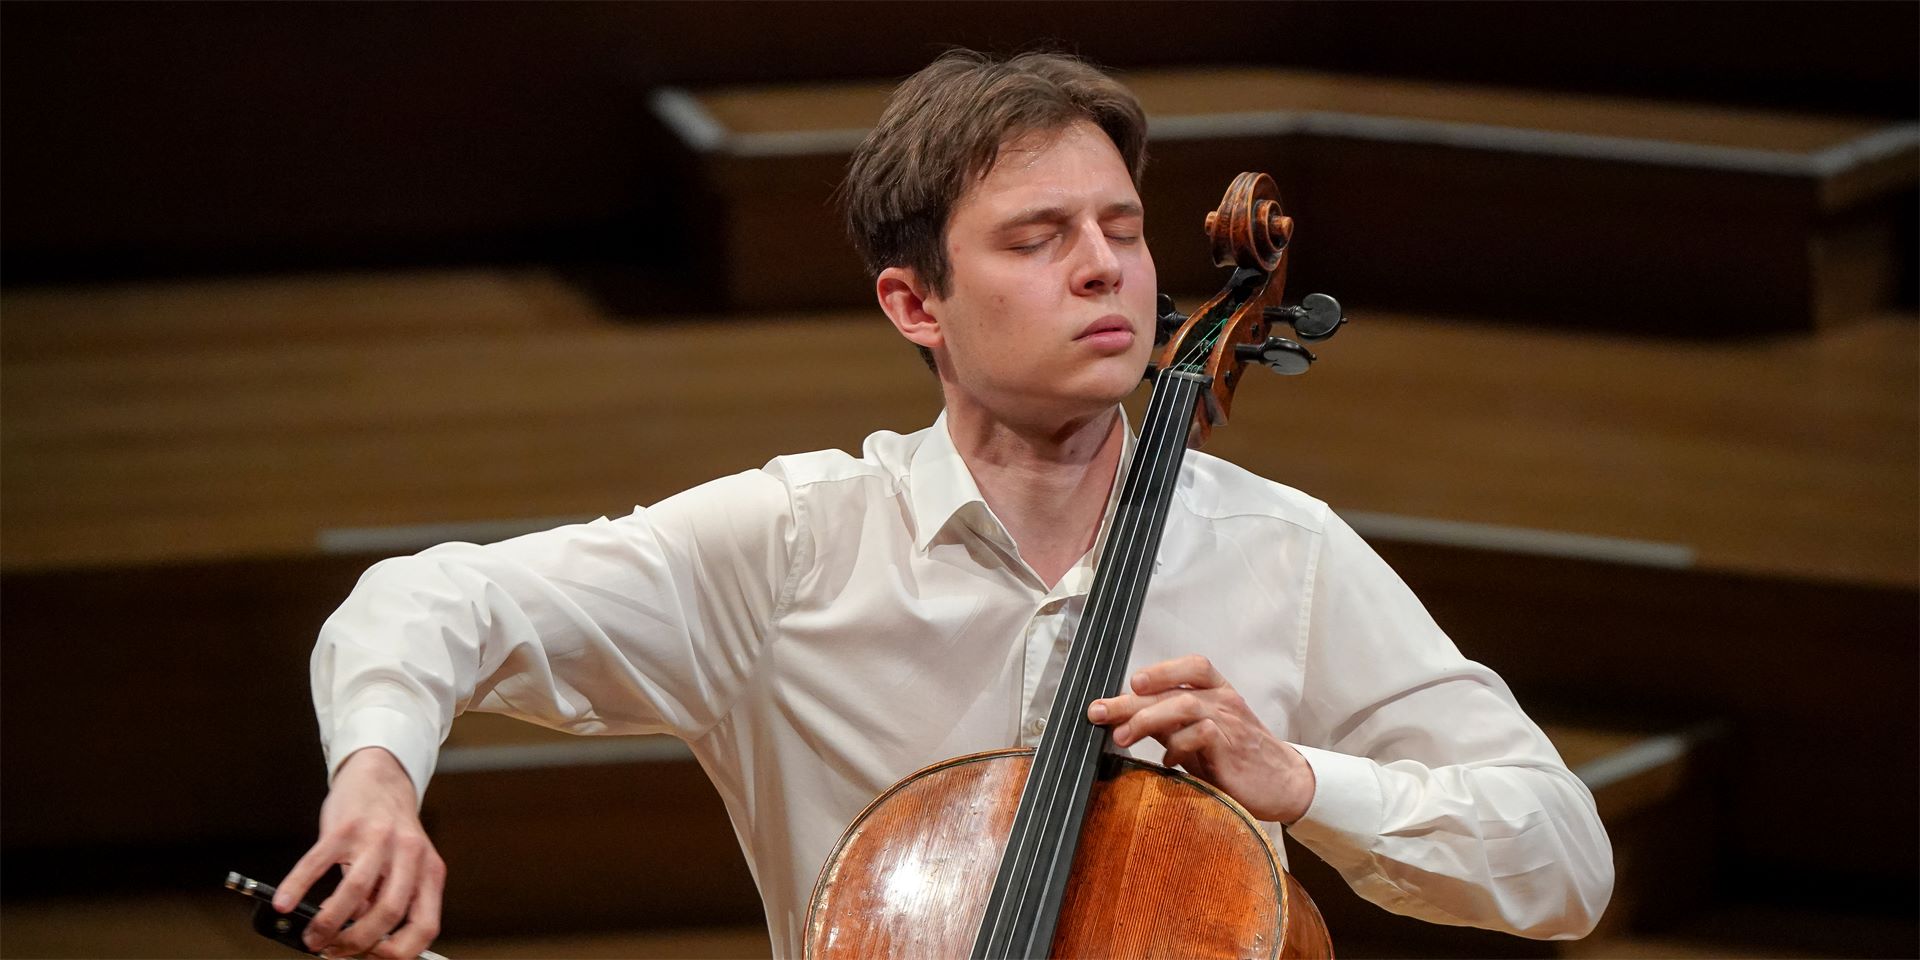 大提琴家 Ivan Skanavi 成为拉尔森弦乐团艺术家